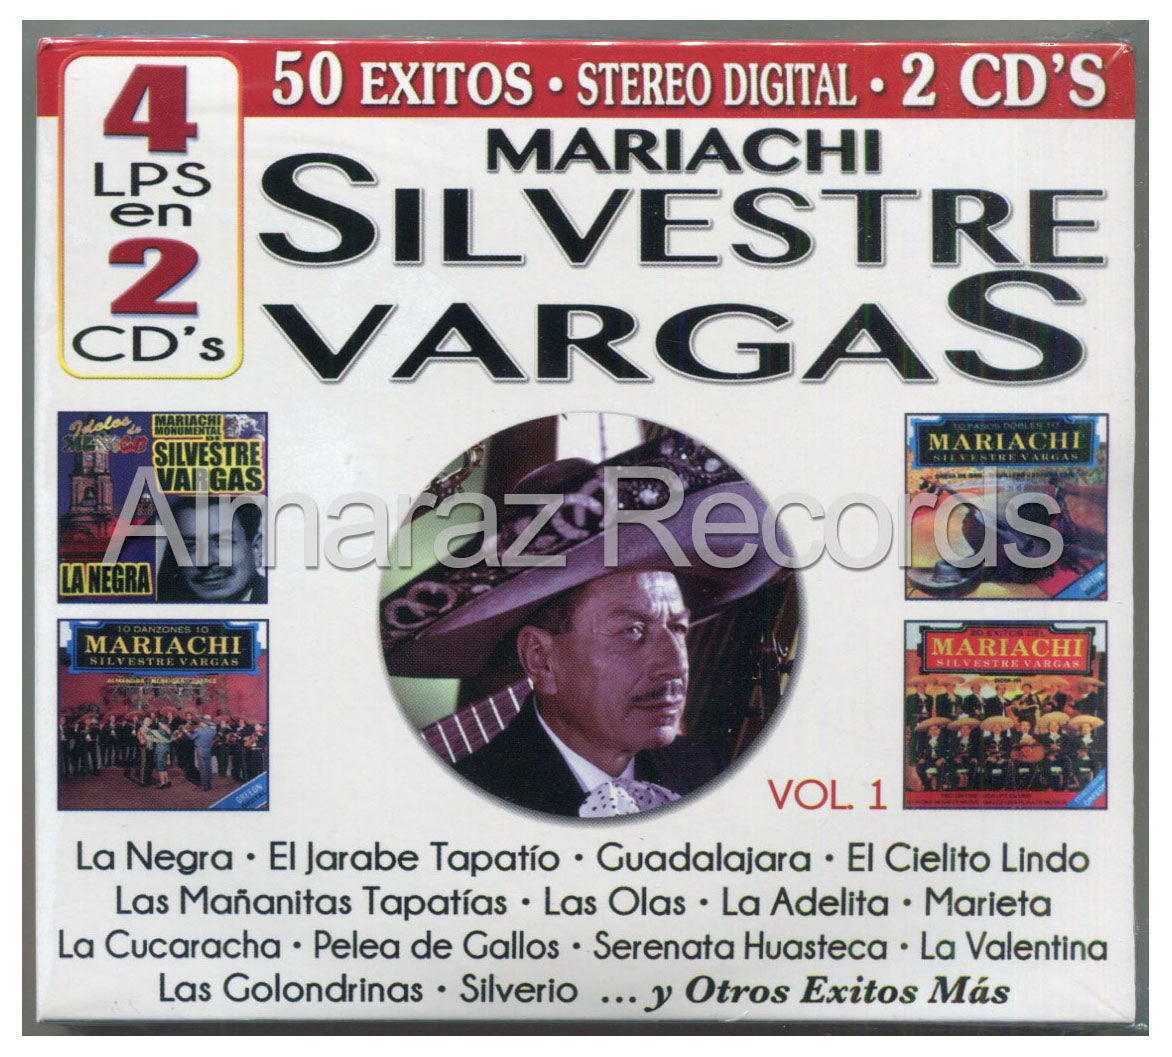 Mariachi Silvestre Vargas 50 Exitos Vol. 1 2CD